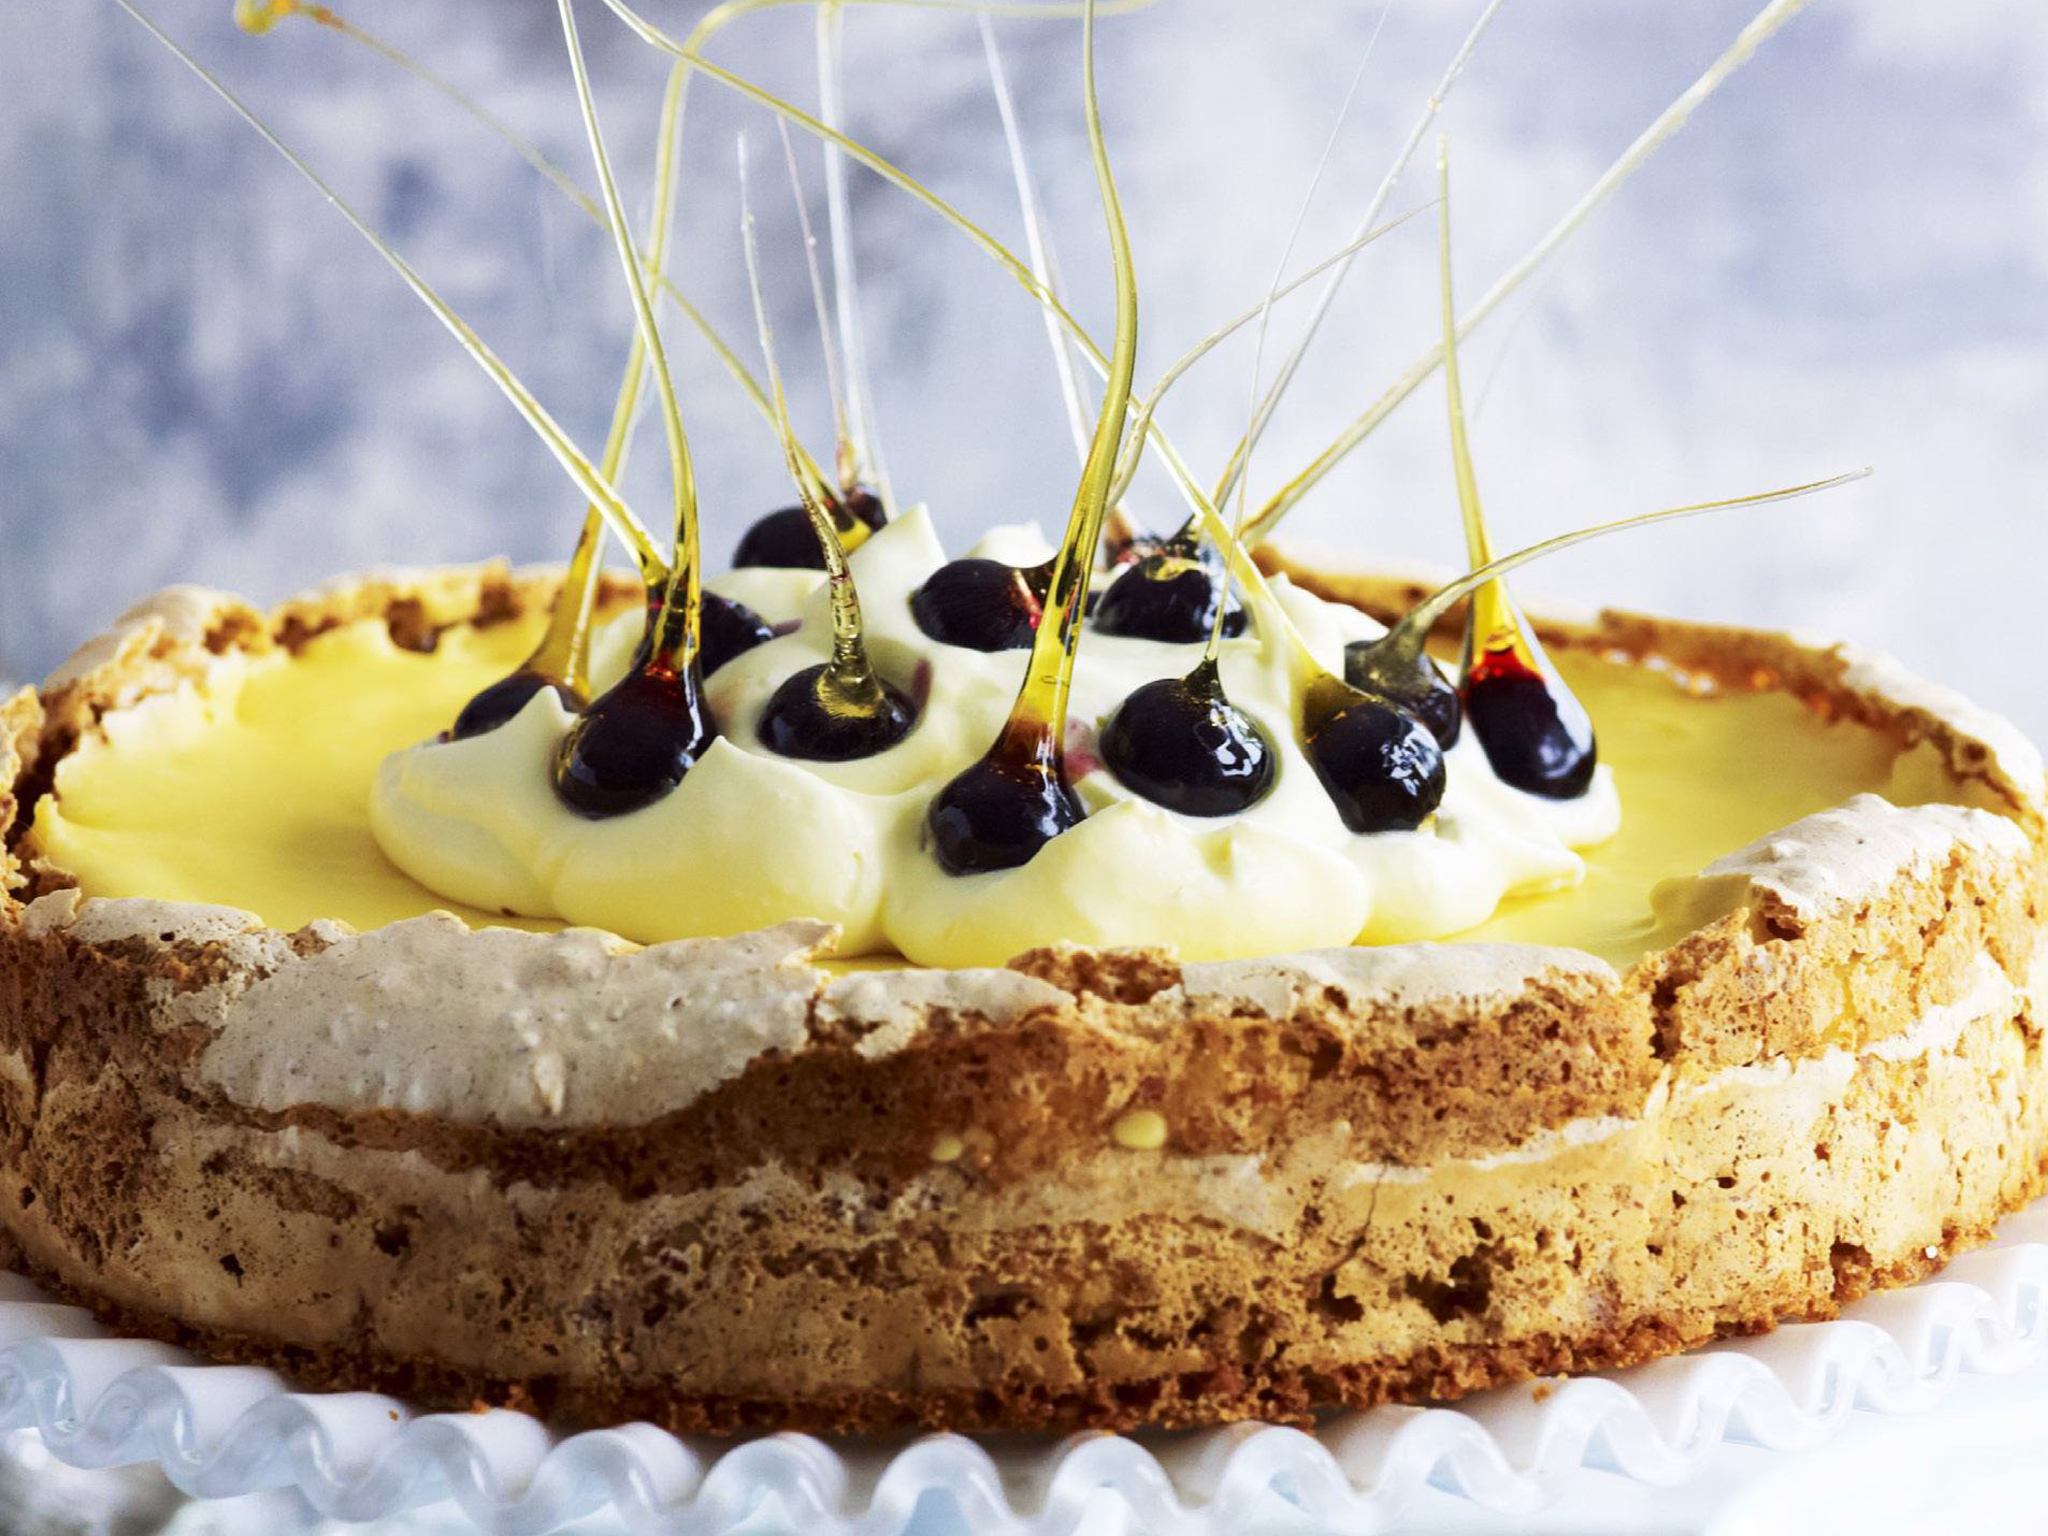 lemon curd meringue cake with blueberries